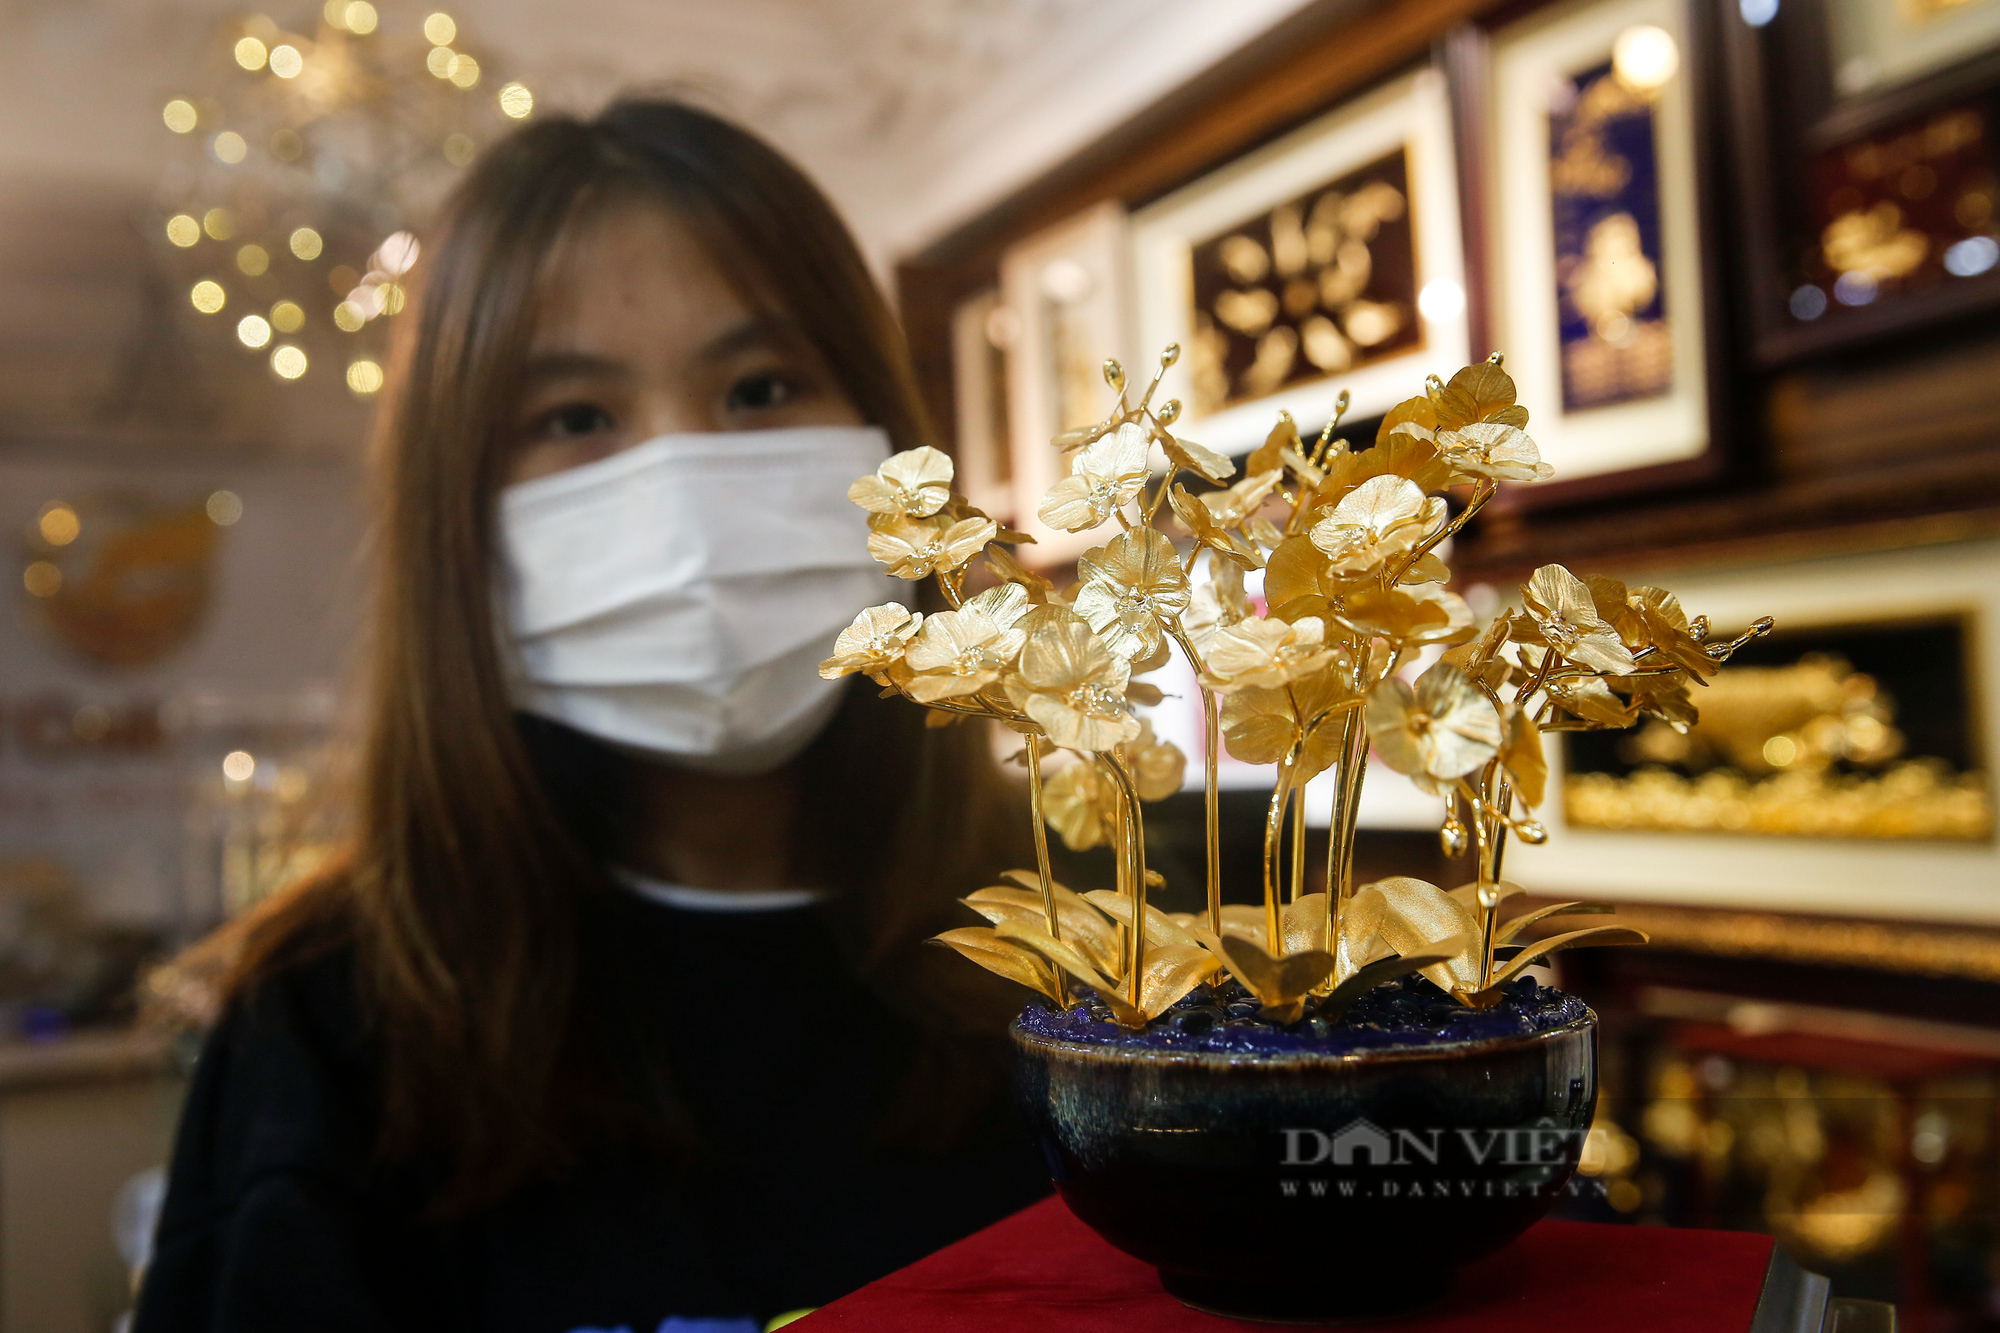 Sản phẩm dát vàng cực độc, cực đắt hút khách trước ngày Phụ nữ Việt Nam 20/10 - Ảnh 2.